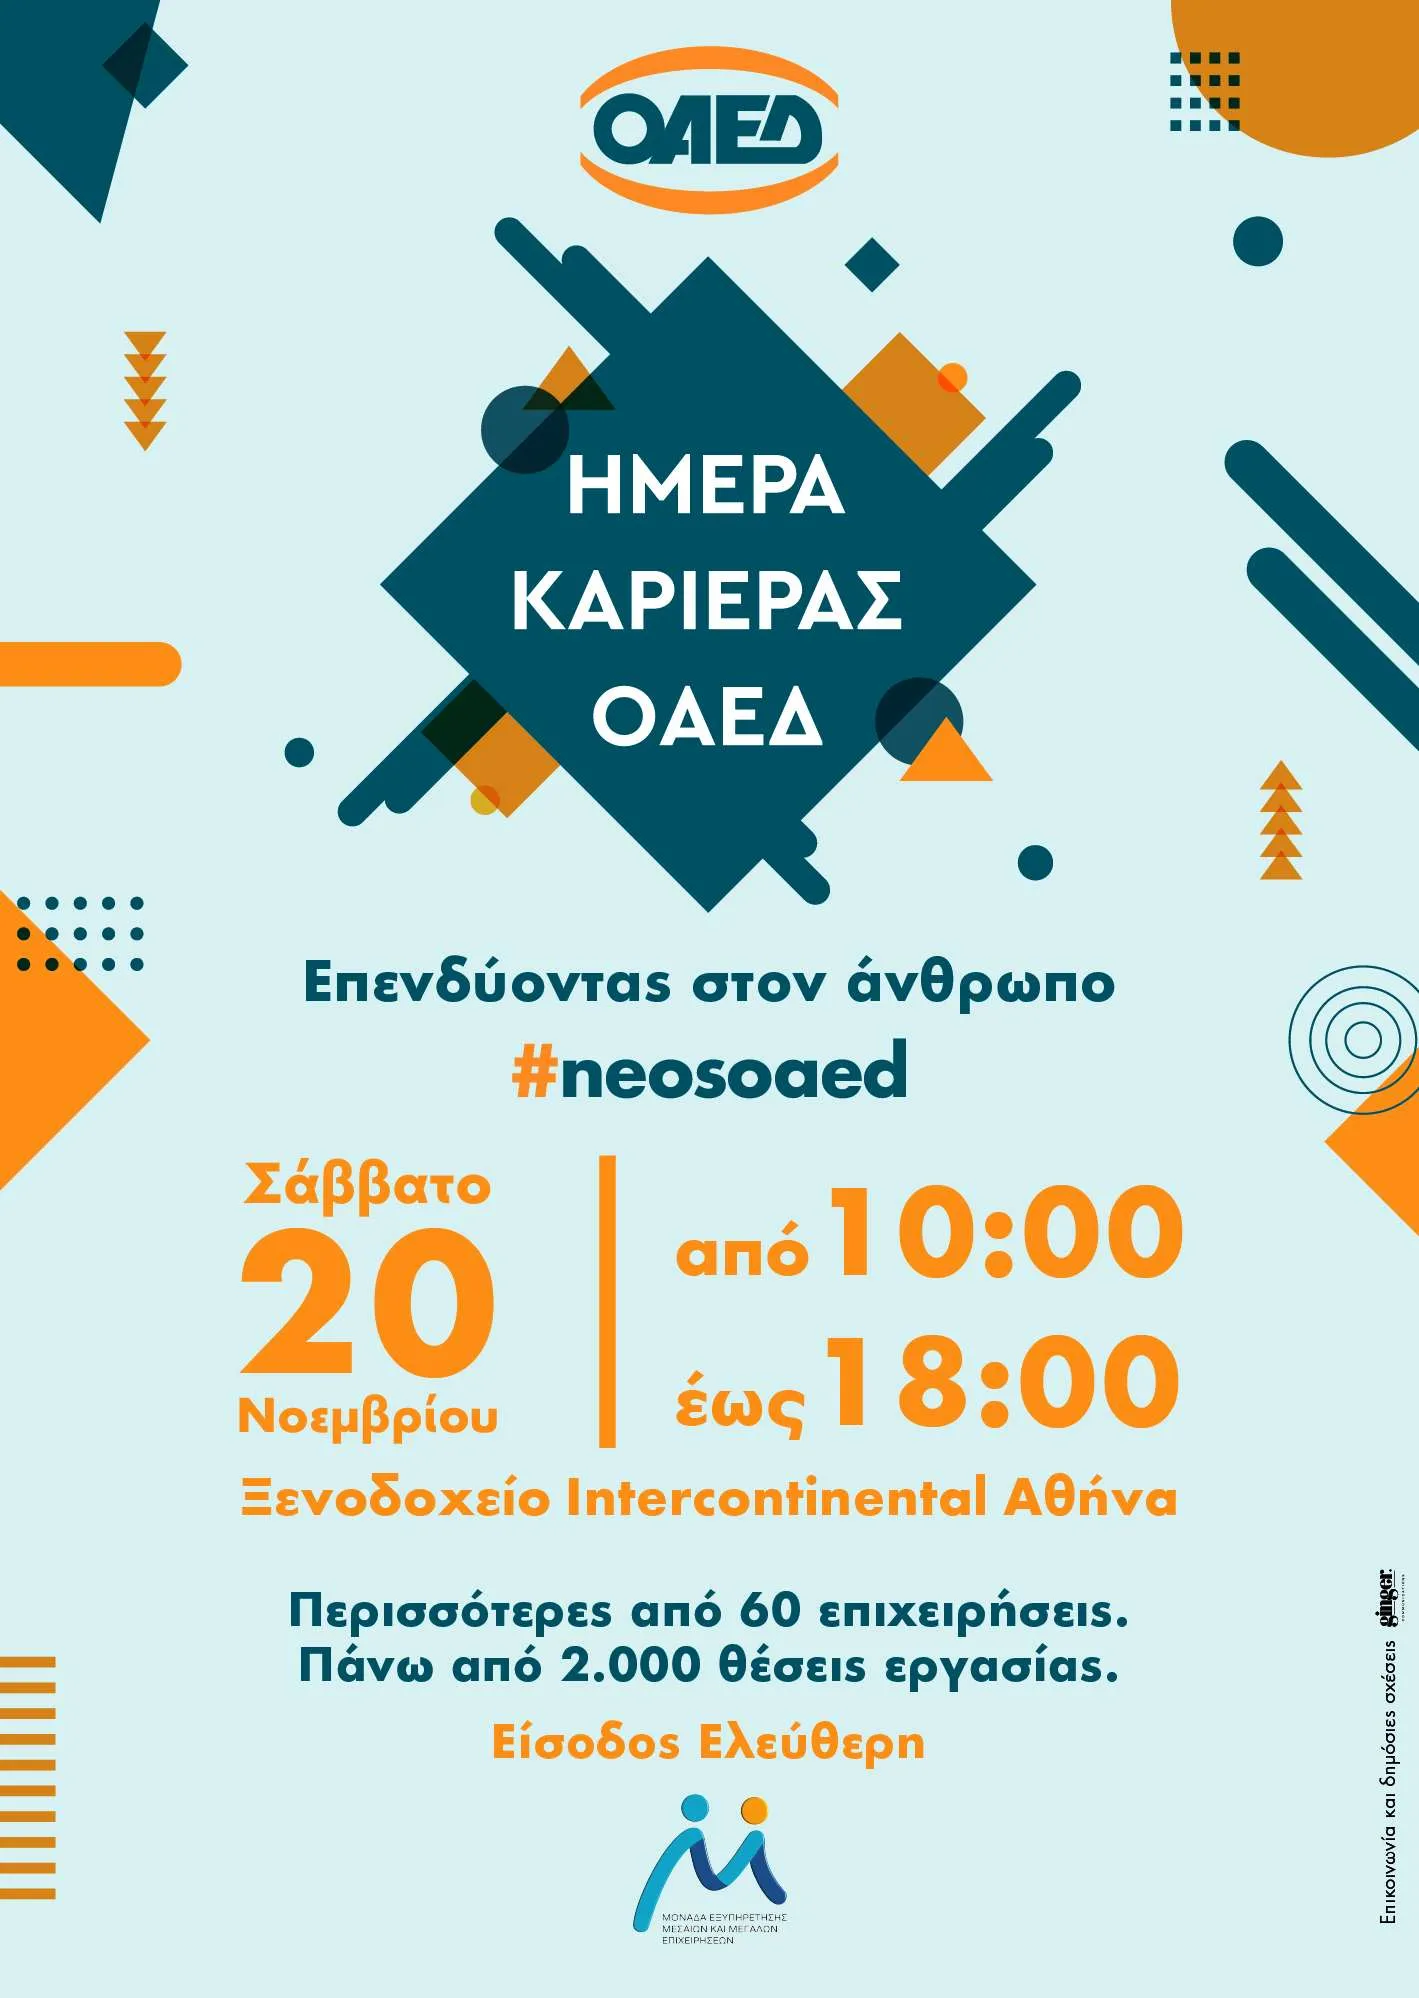 «Ημέρα Καριέρας ΟΑΕΔ» στις 20 Νοεμβρίου στην Αθήνα